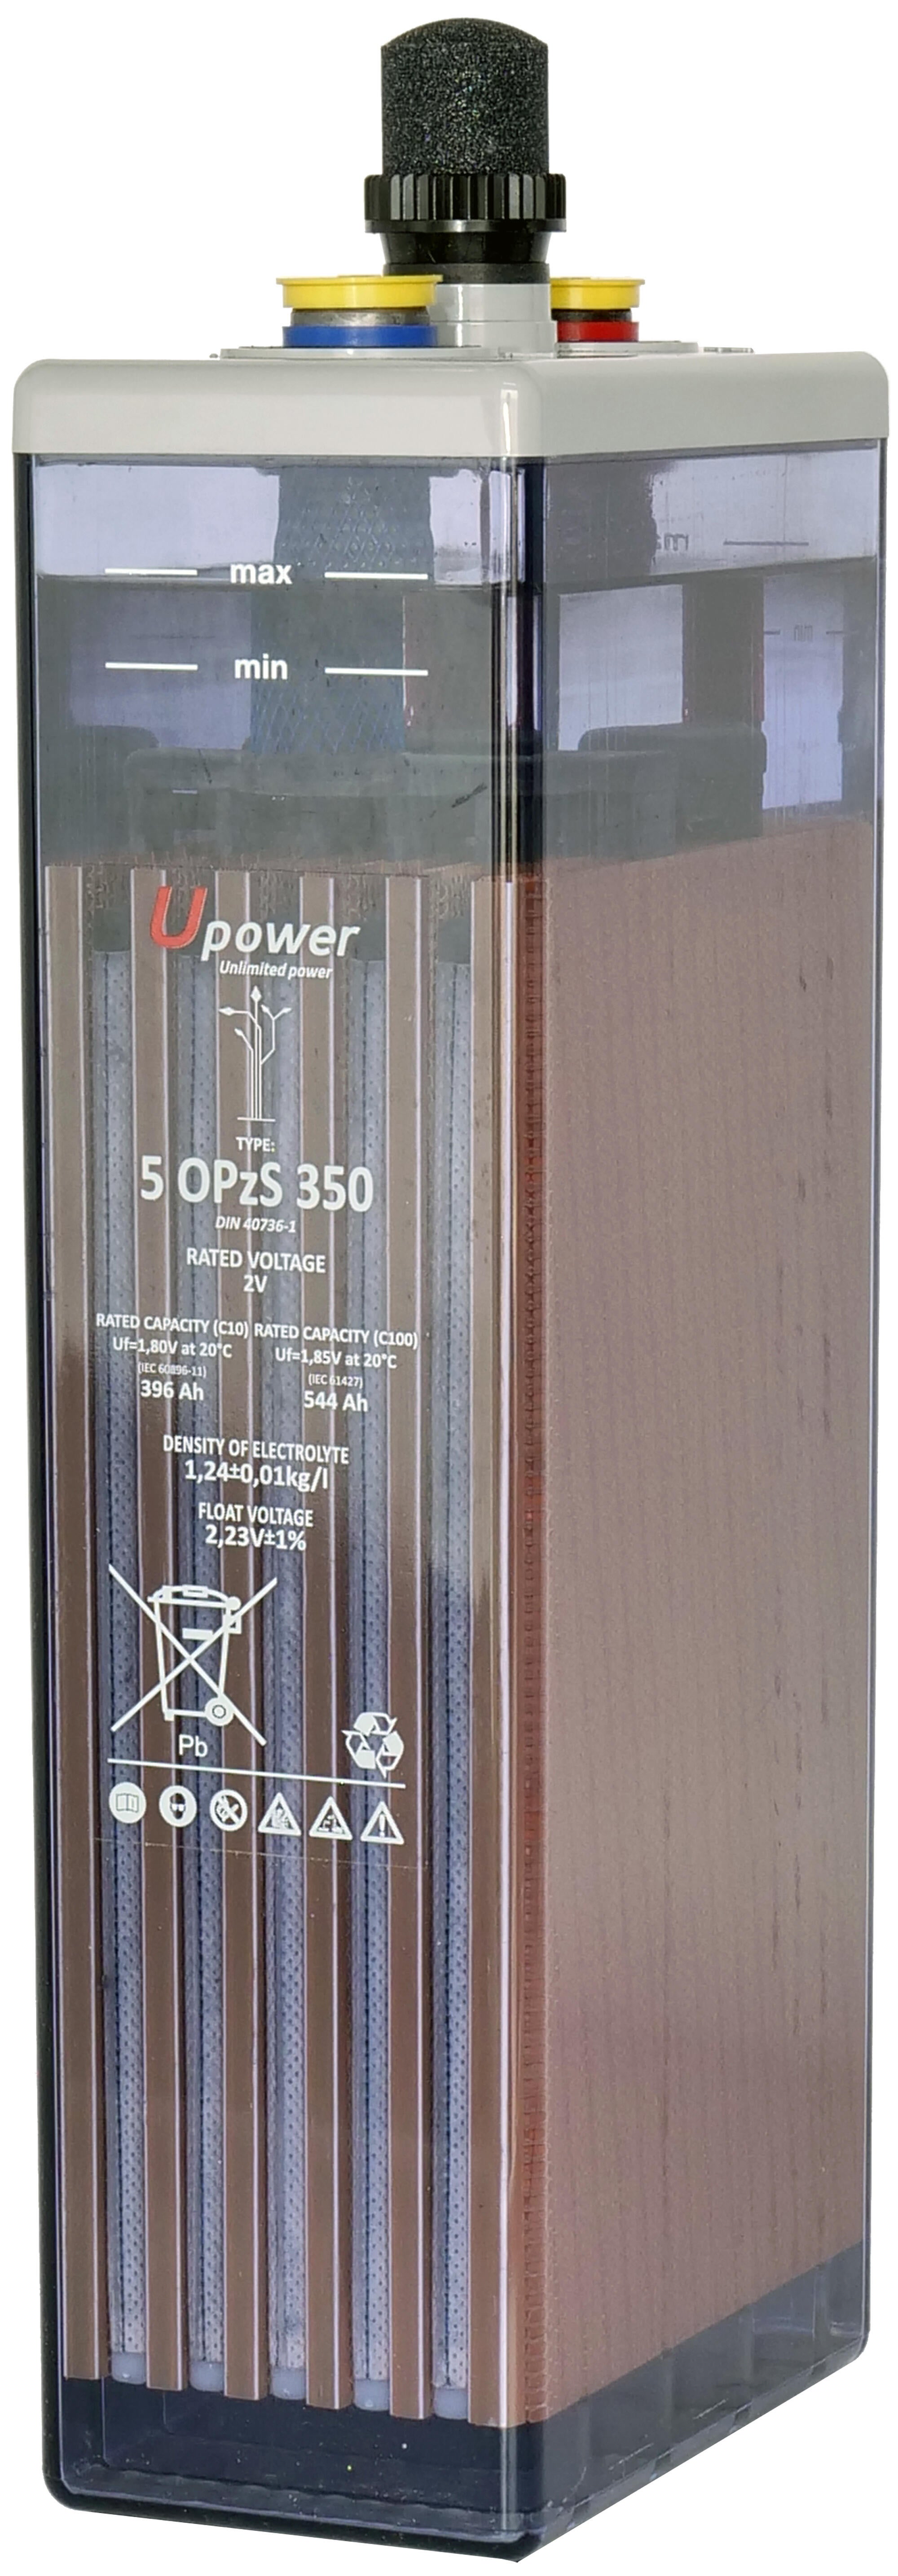 Batería solar estacionarial u-power 5 opzs 350 2v c100 627ah